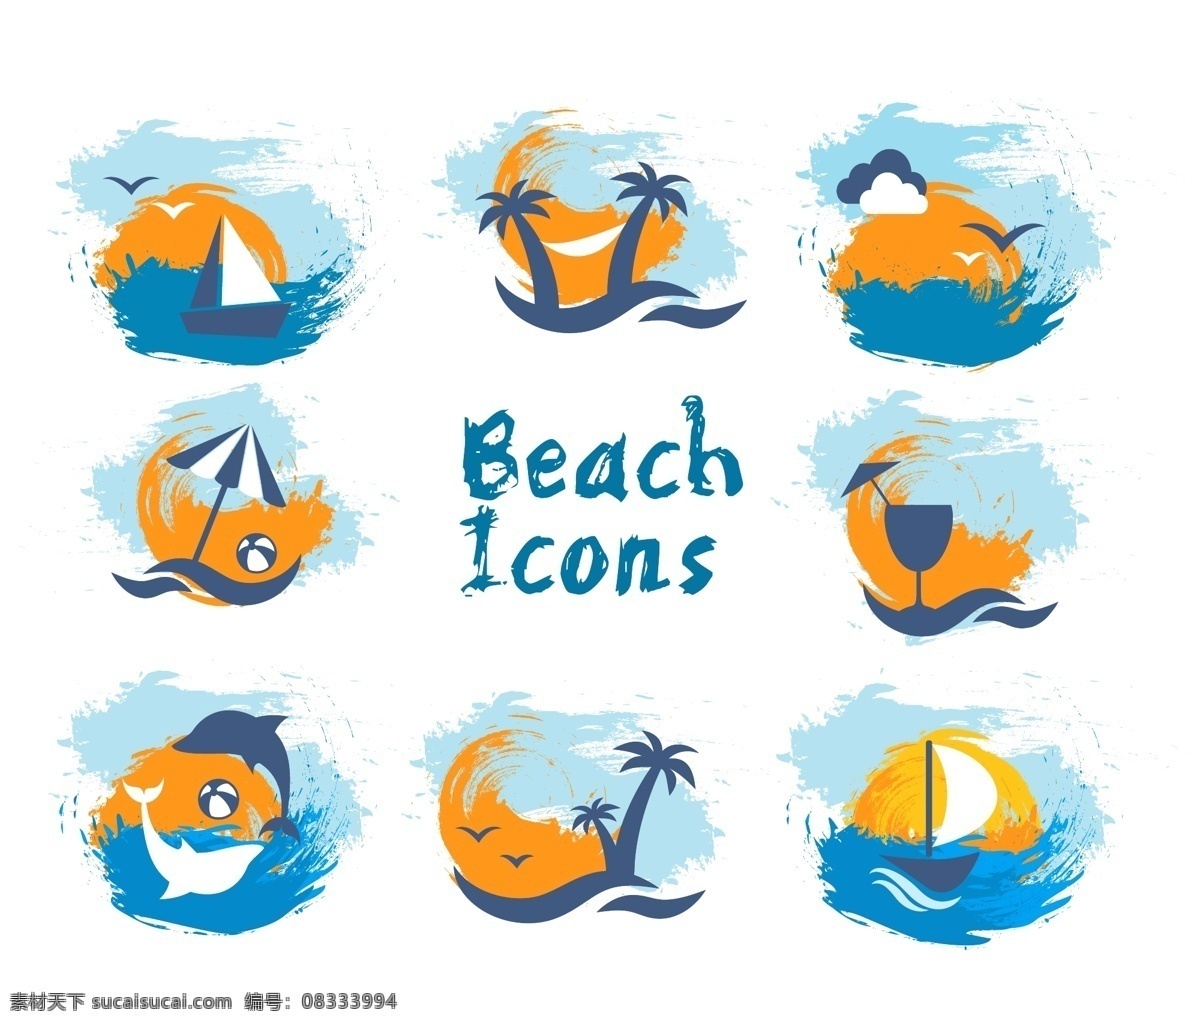 帆船 图标 夏日 度假 沙滩 椰树 矢量 复古 创意 涂鸦 英文 小清新 卡通 填充 插画 背景 海报 广告 包装 印刷